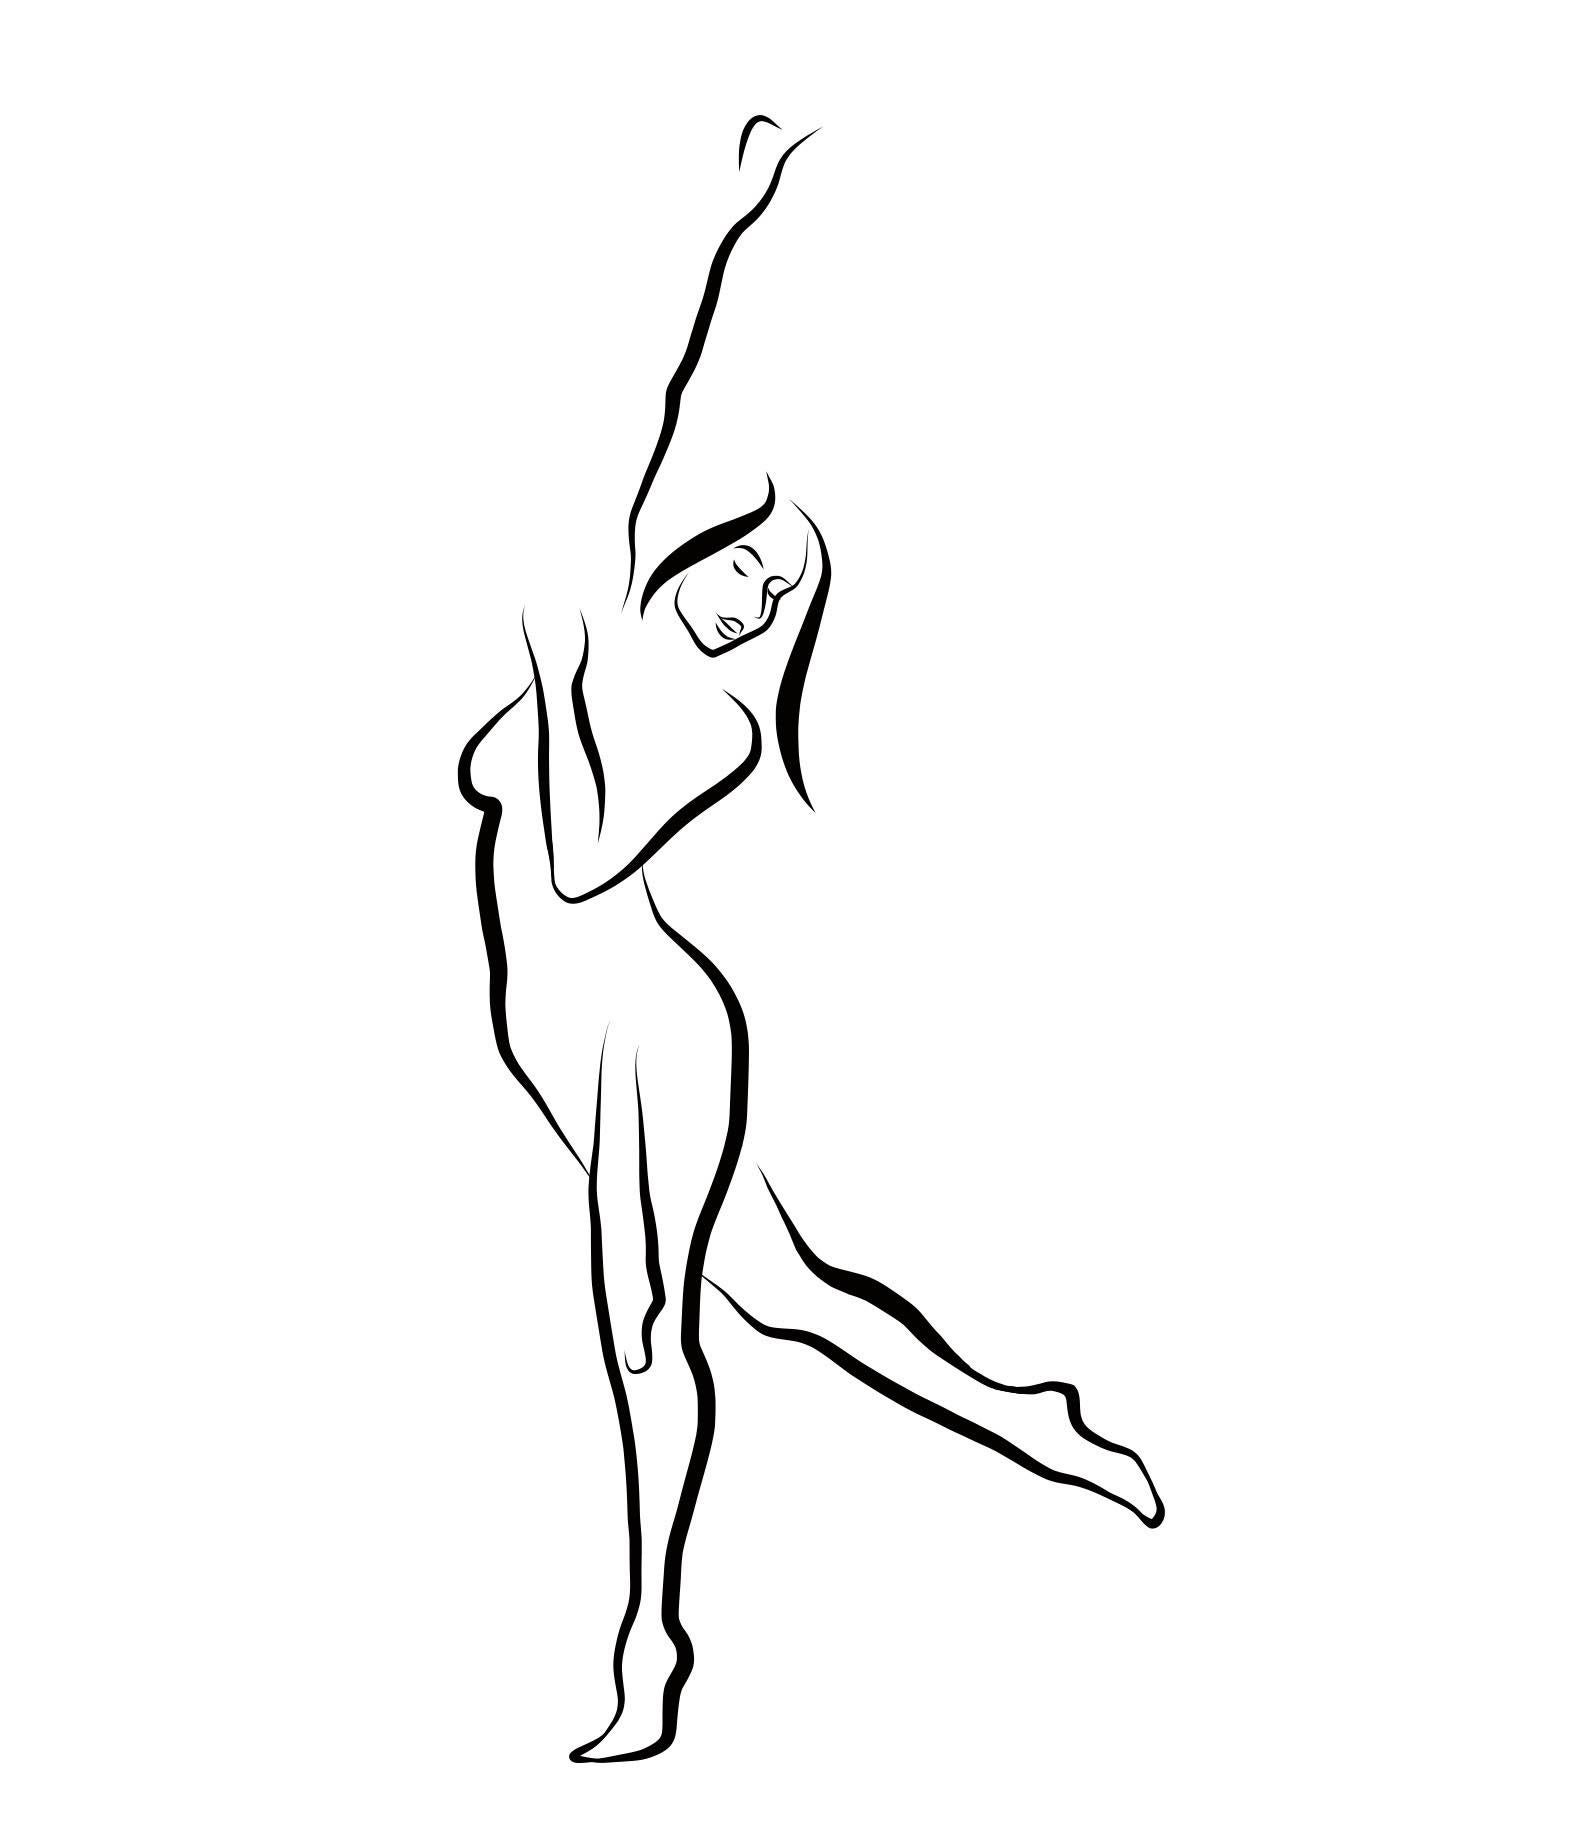 Haiku #24, 1/50 - Digitale Vector-Zeichnung einer tanzenden weiblichen Aktfigur in Akt, Armlehne, weiblicher Akt